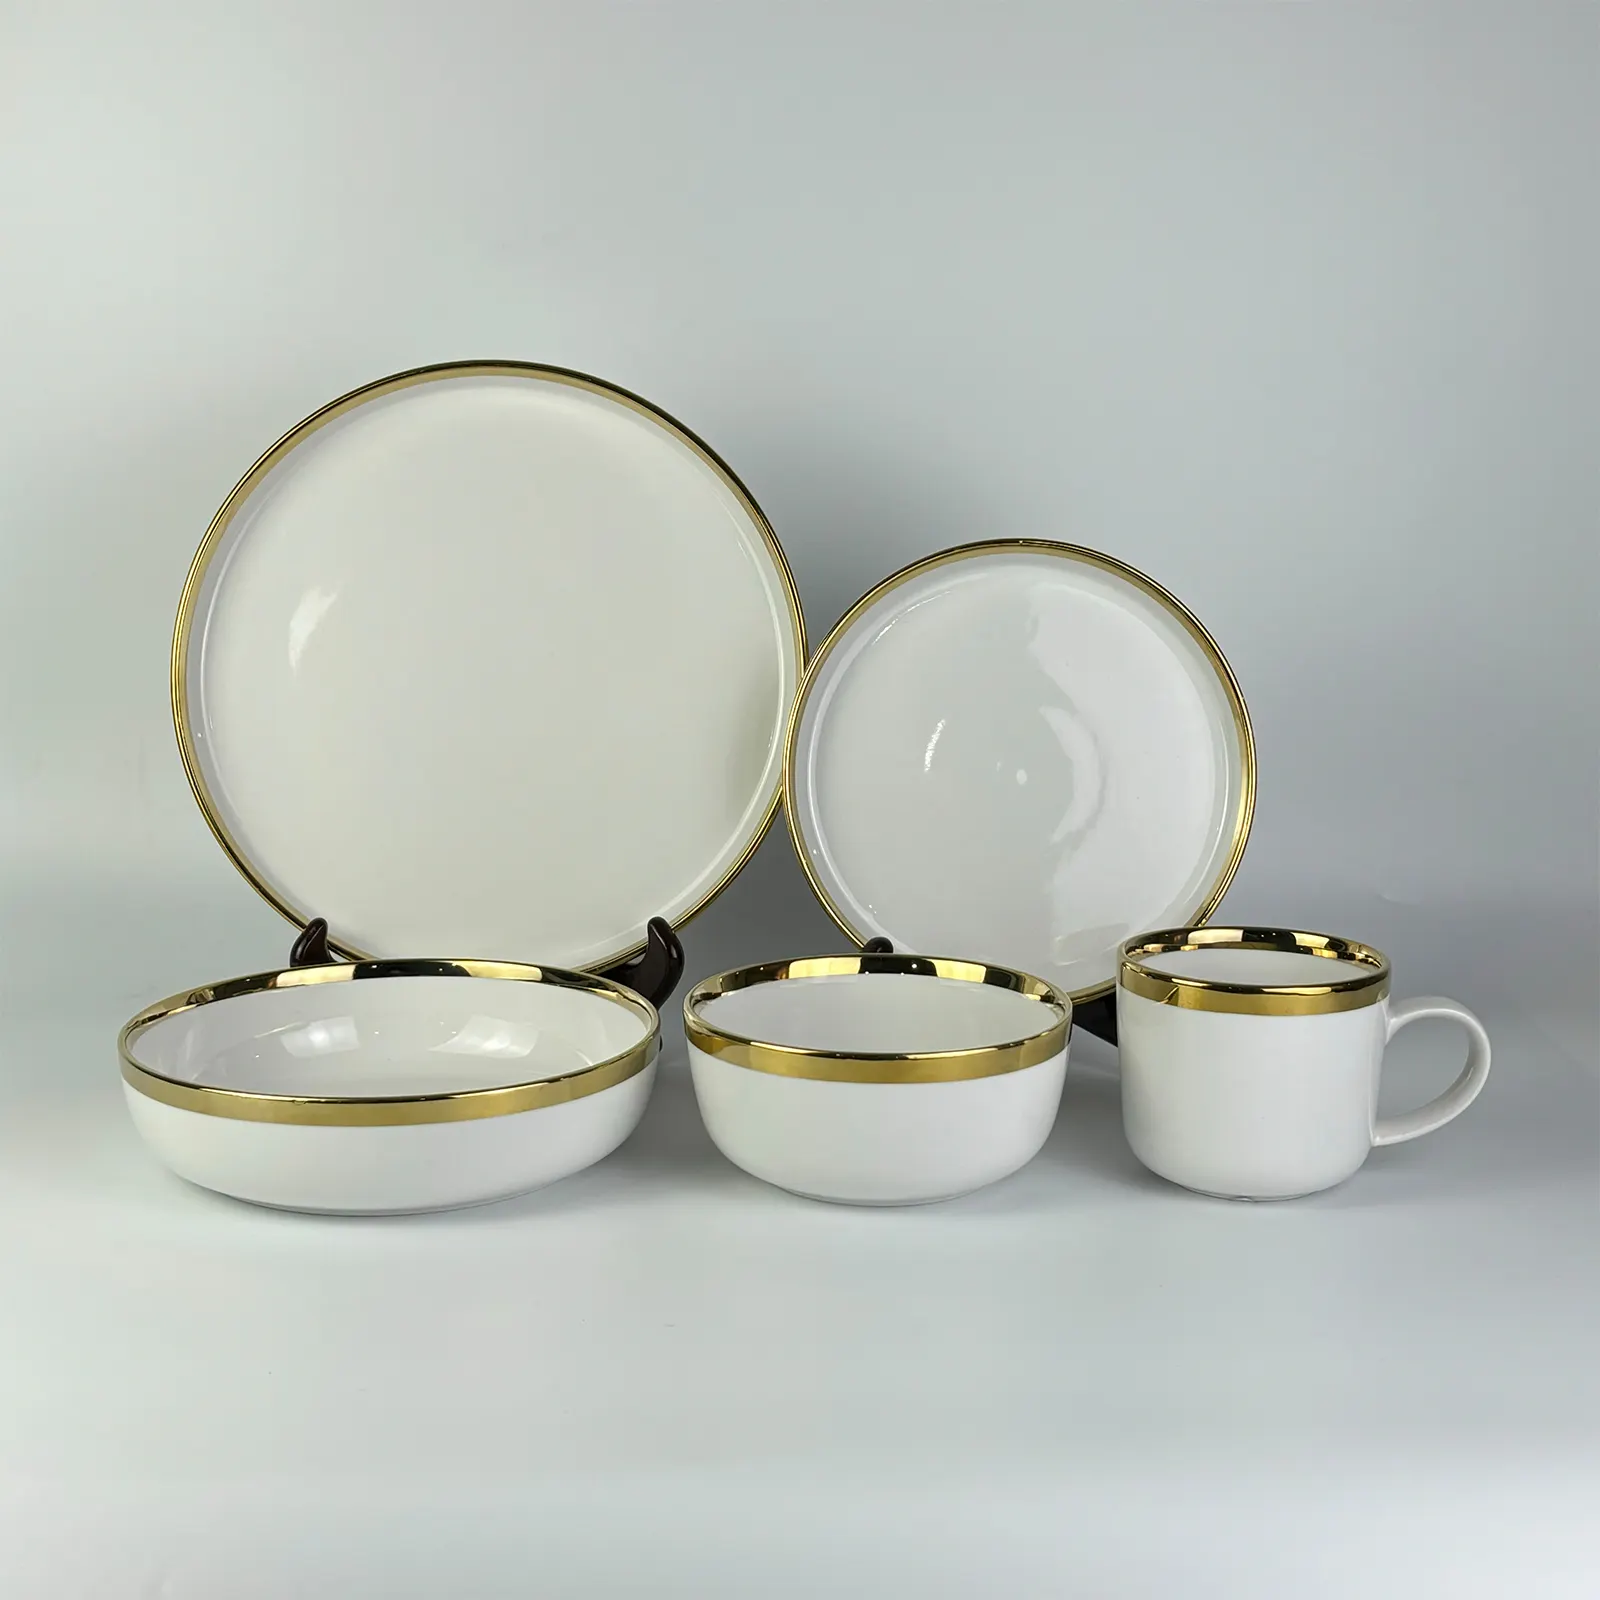 Design personnalisé porcelaine restaurants bol plats assiettes service de table vaisselle en porcelaine bord doré